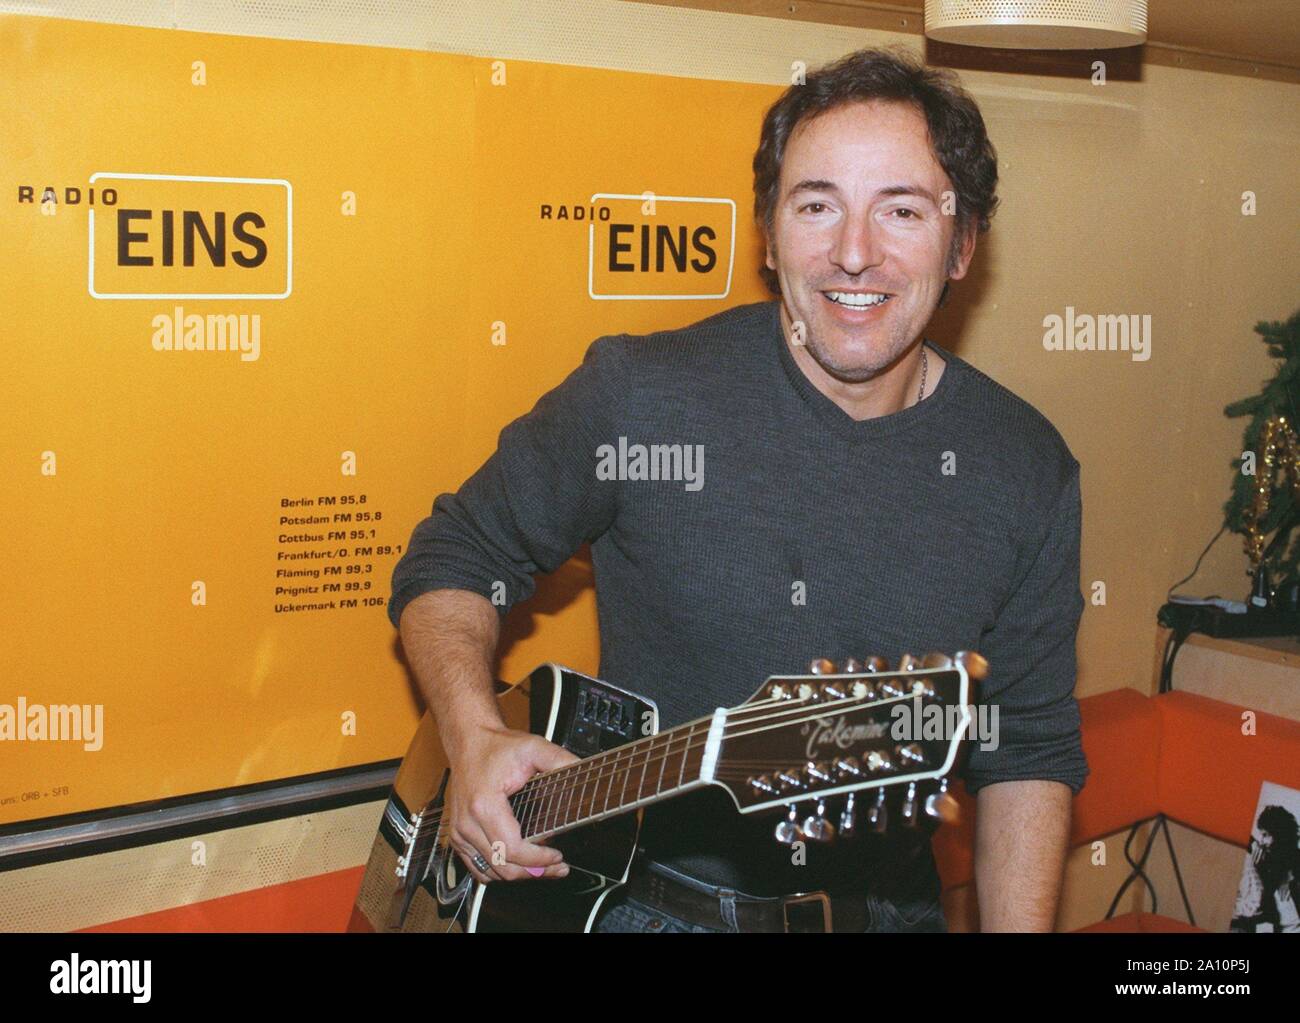 Berlín: Superstar Bruce Springsteen hizo una breve parada en Berlín el 7 de  diciembre de 1998, durante su gira promocional por varios países europeos,  y concedió una entrevista a la emisora Radio